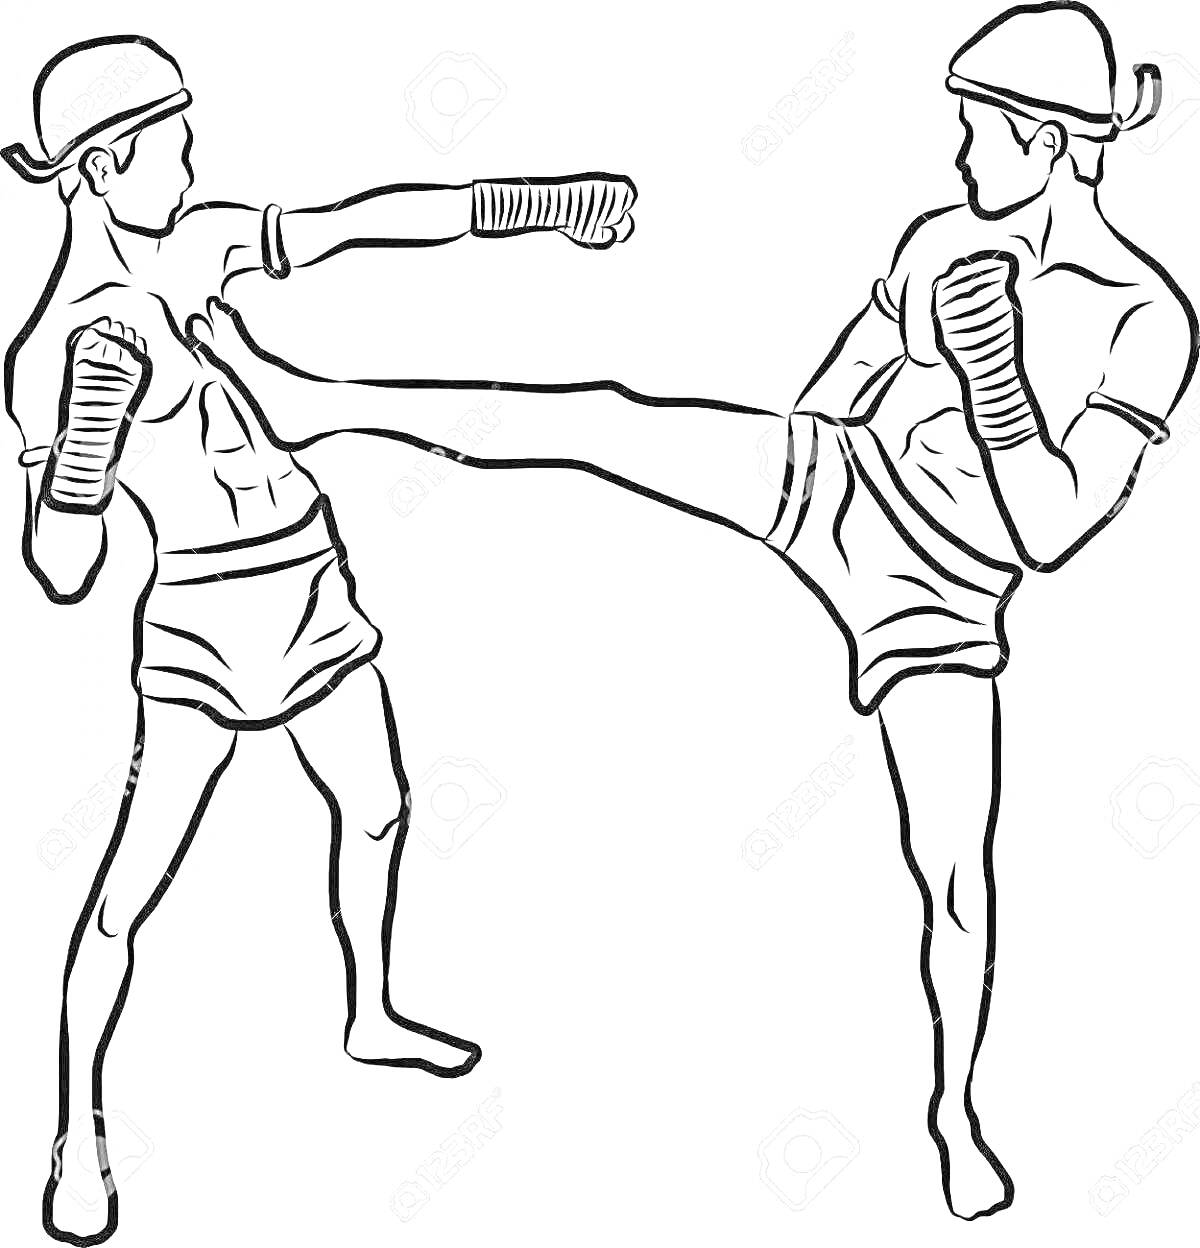 Поединок по кикбоксингу — удары руками и ногами от двух боксёров в шлемах и перчатках